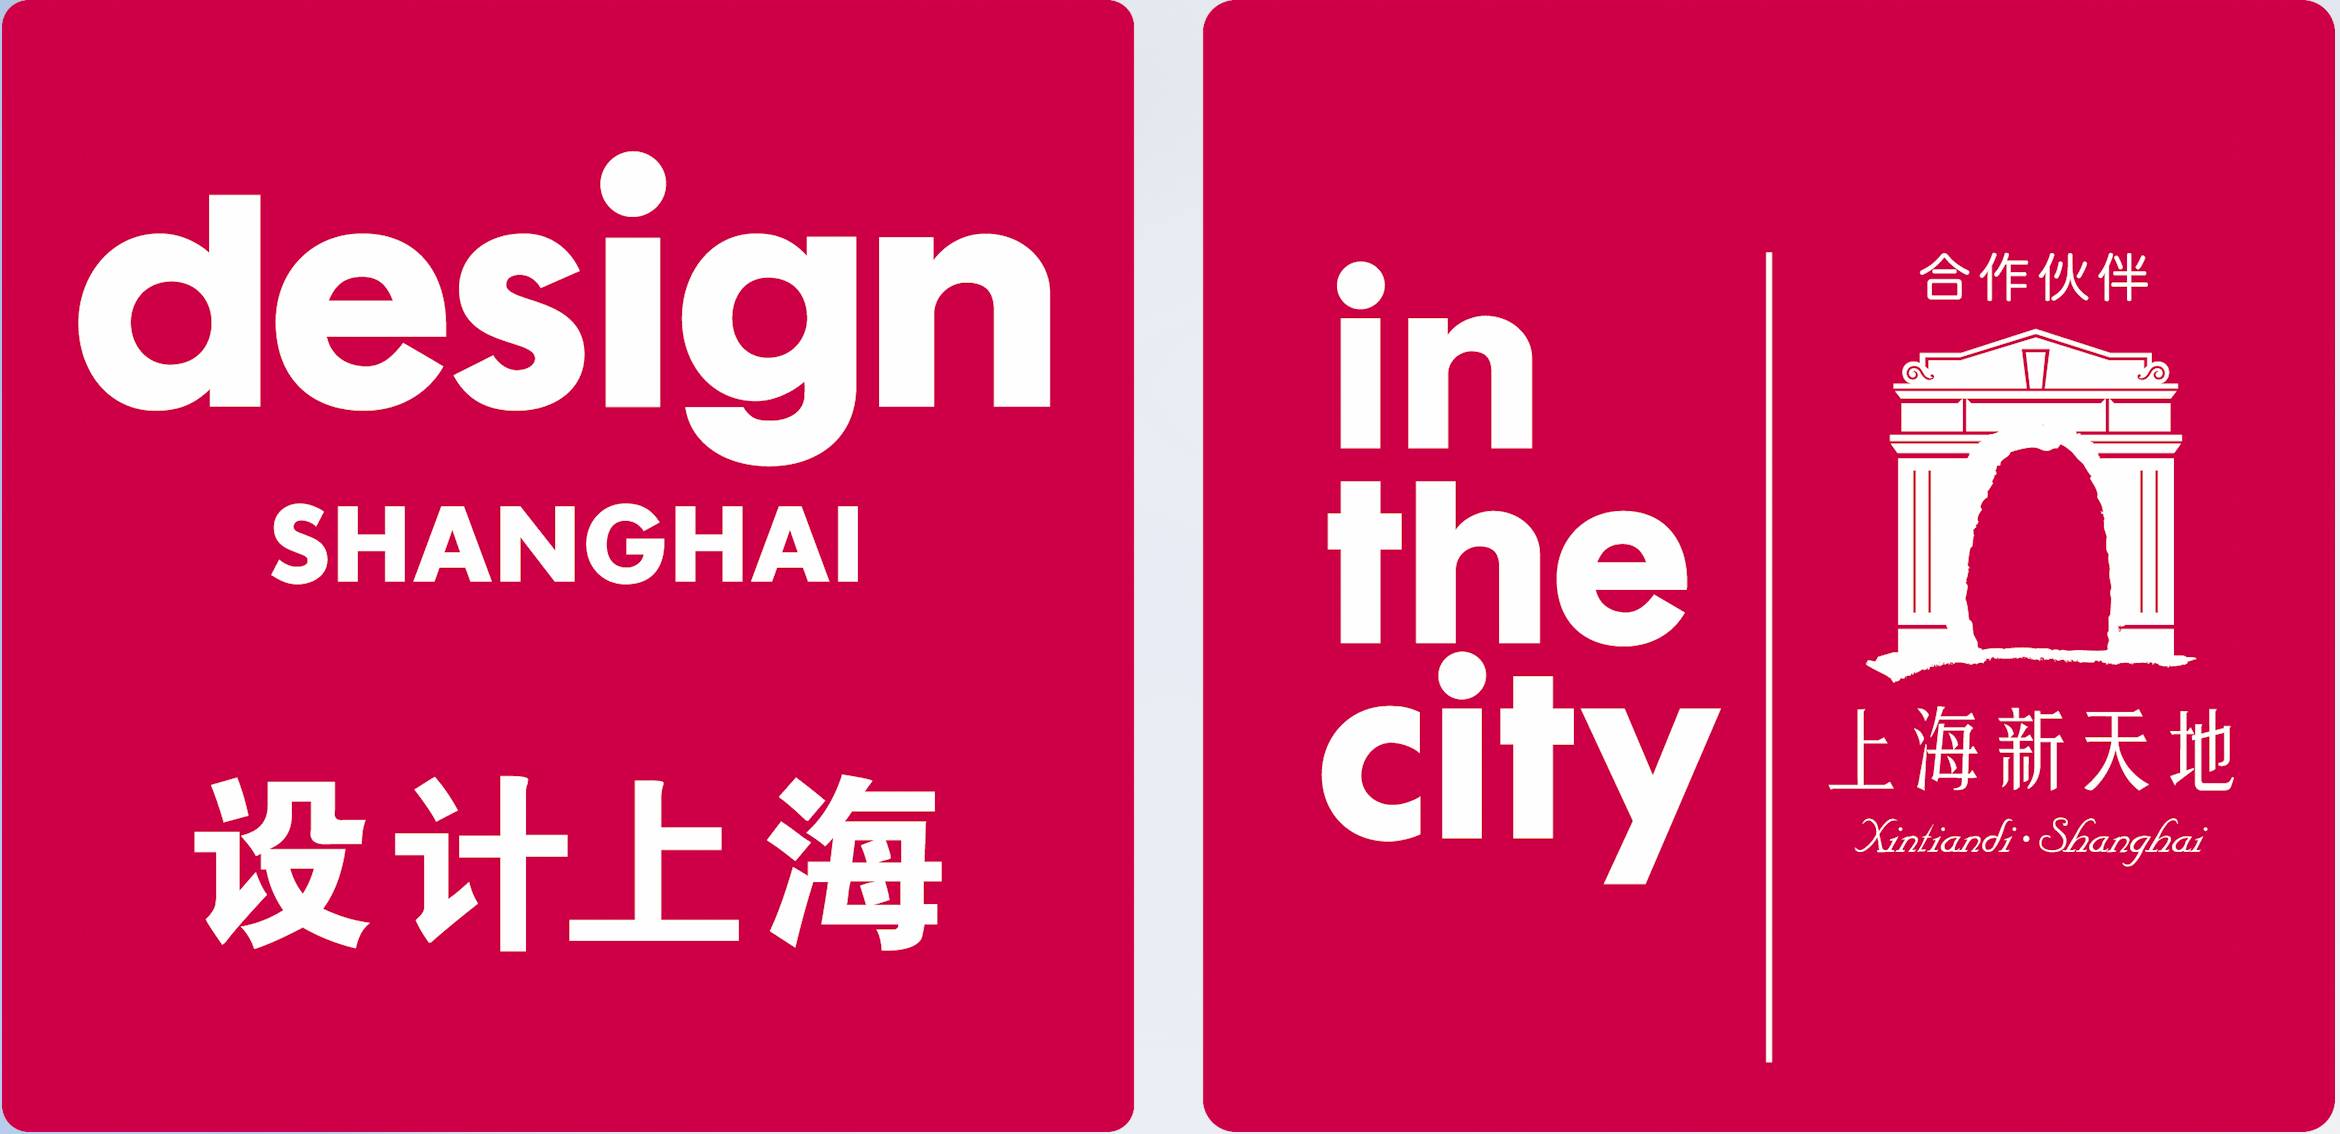 设计上海@新天地设计节将从2017年3月6日持续至3月19日,在此期间